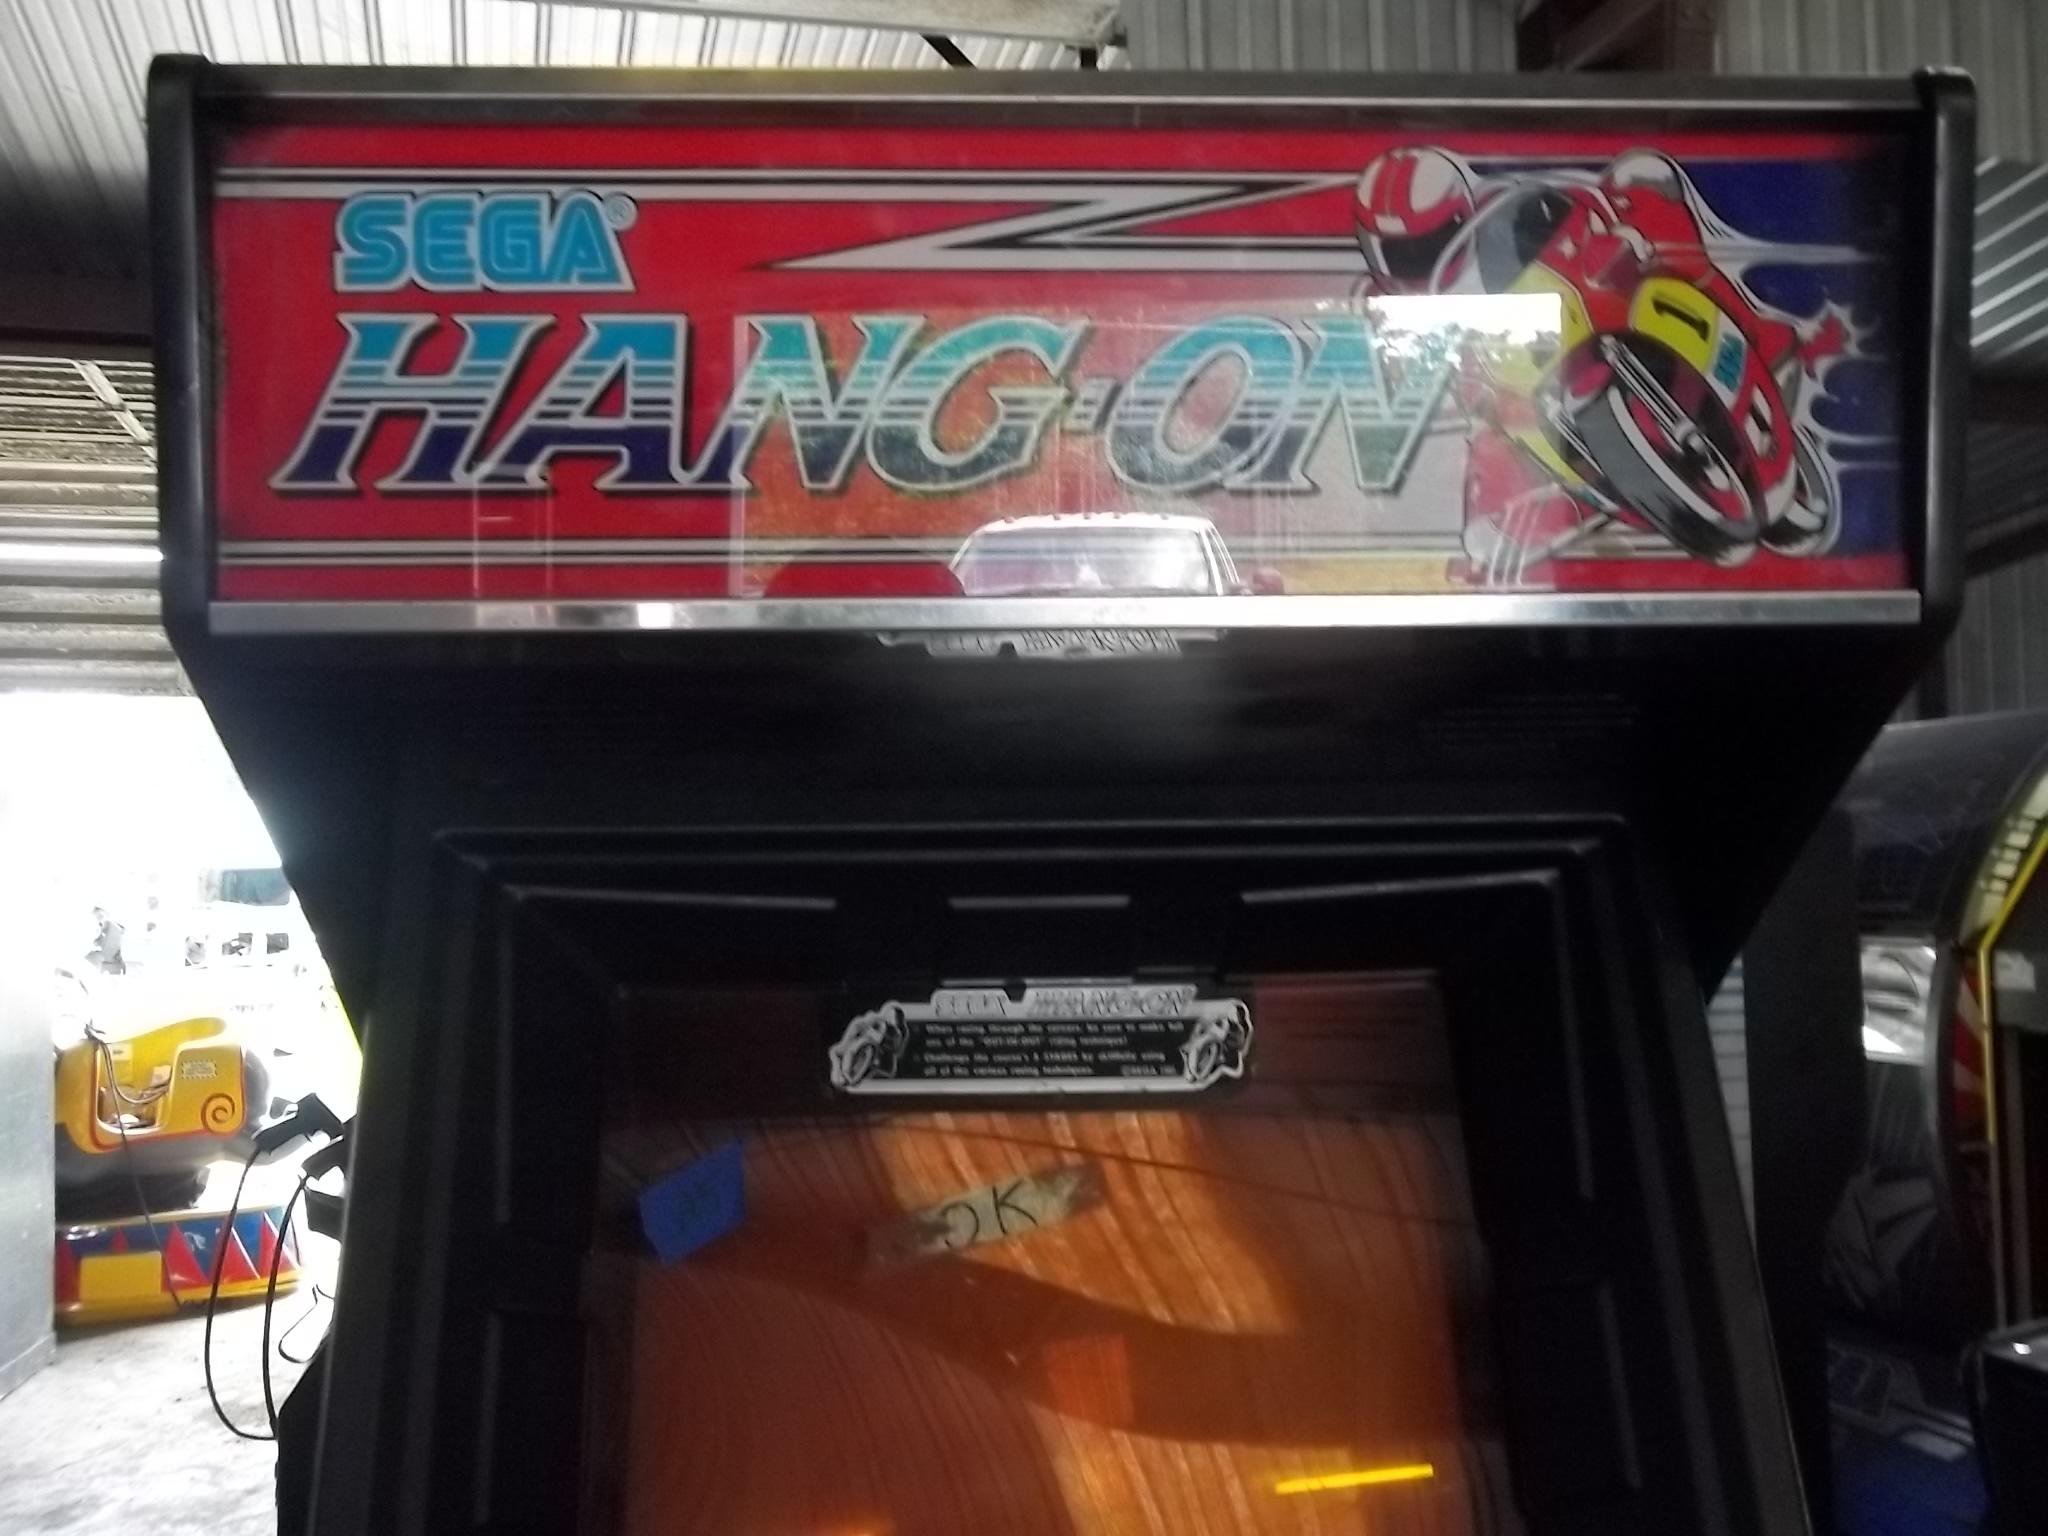 Sega Hang-On Motorcycle Game